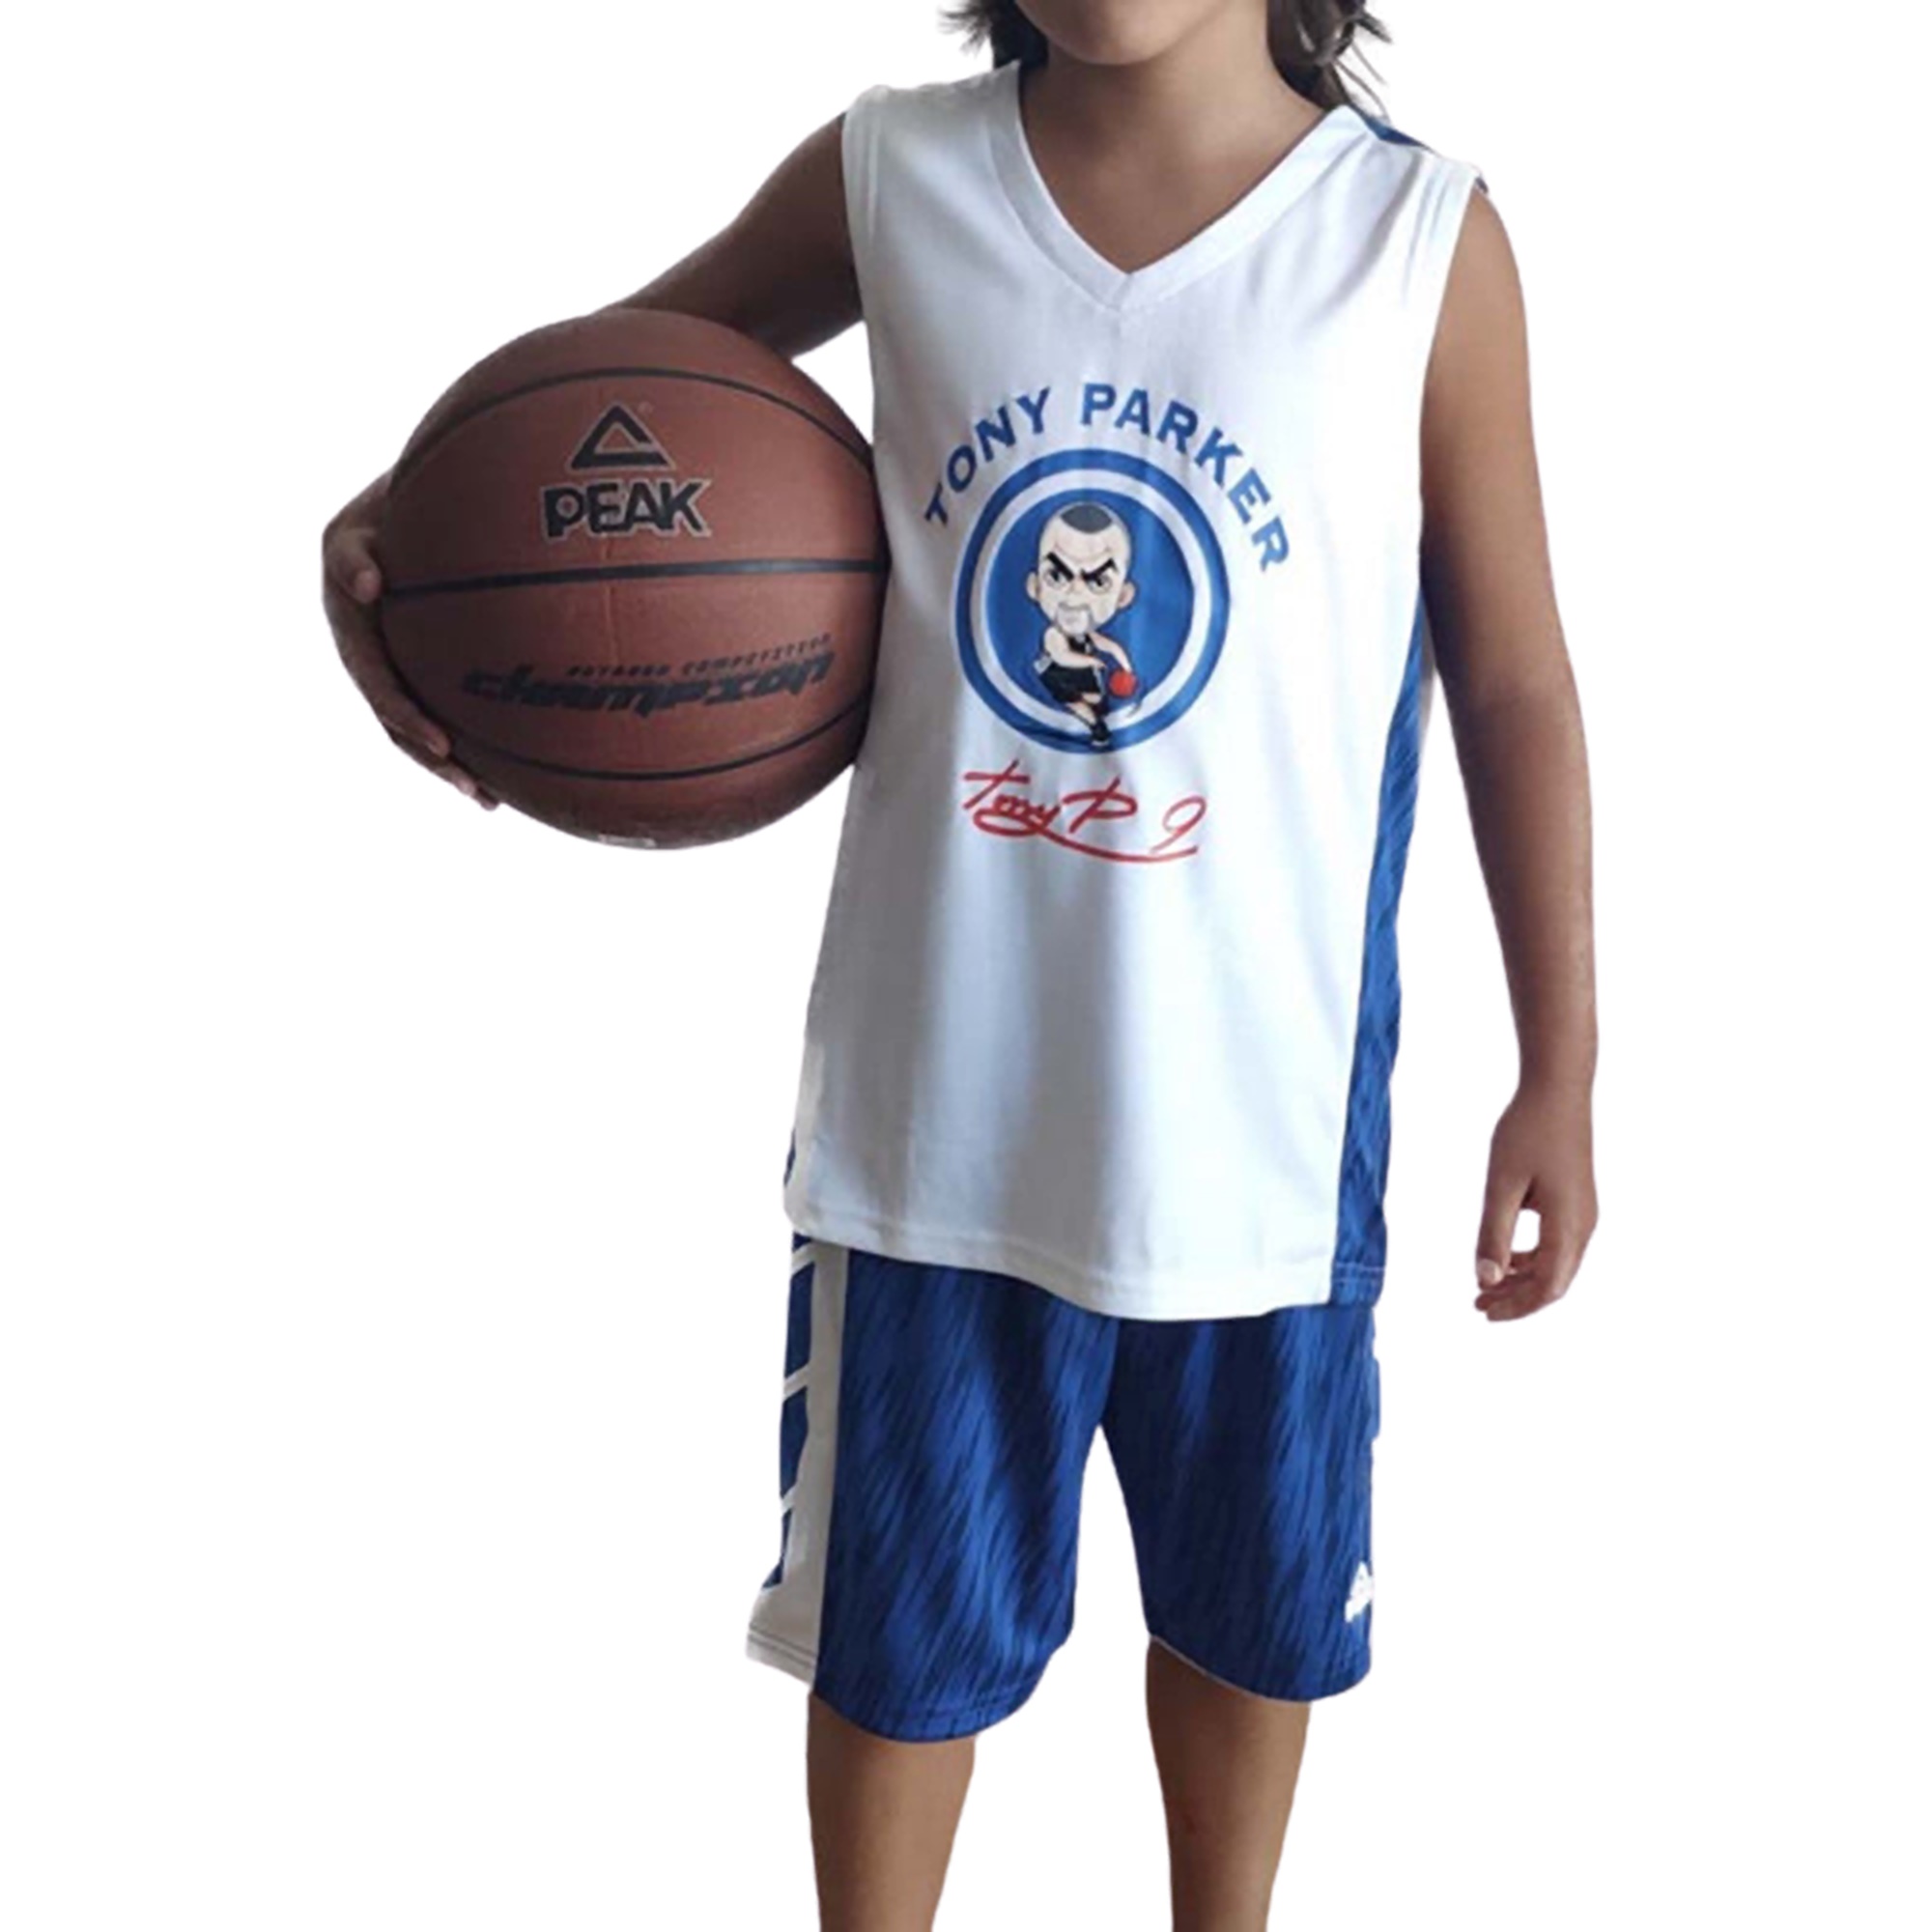 peak-sport-basketball-junior-tony-parker-set-white-blue-1.jpg